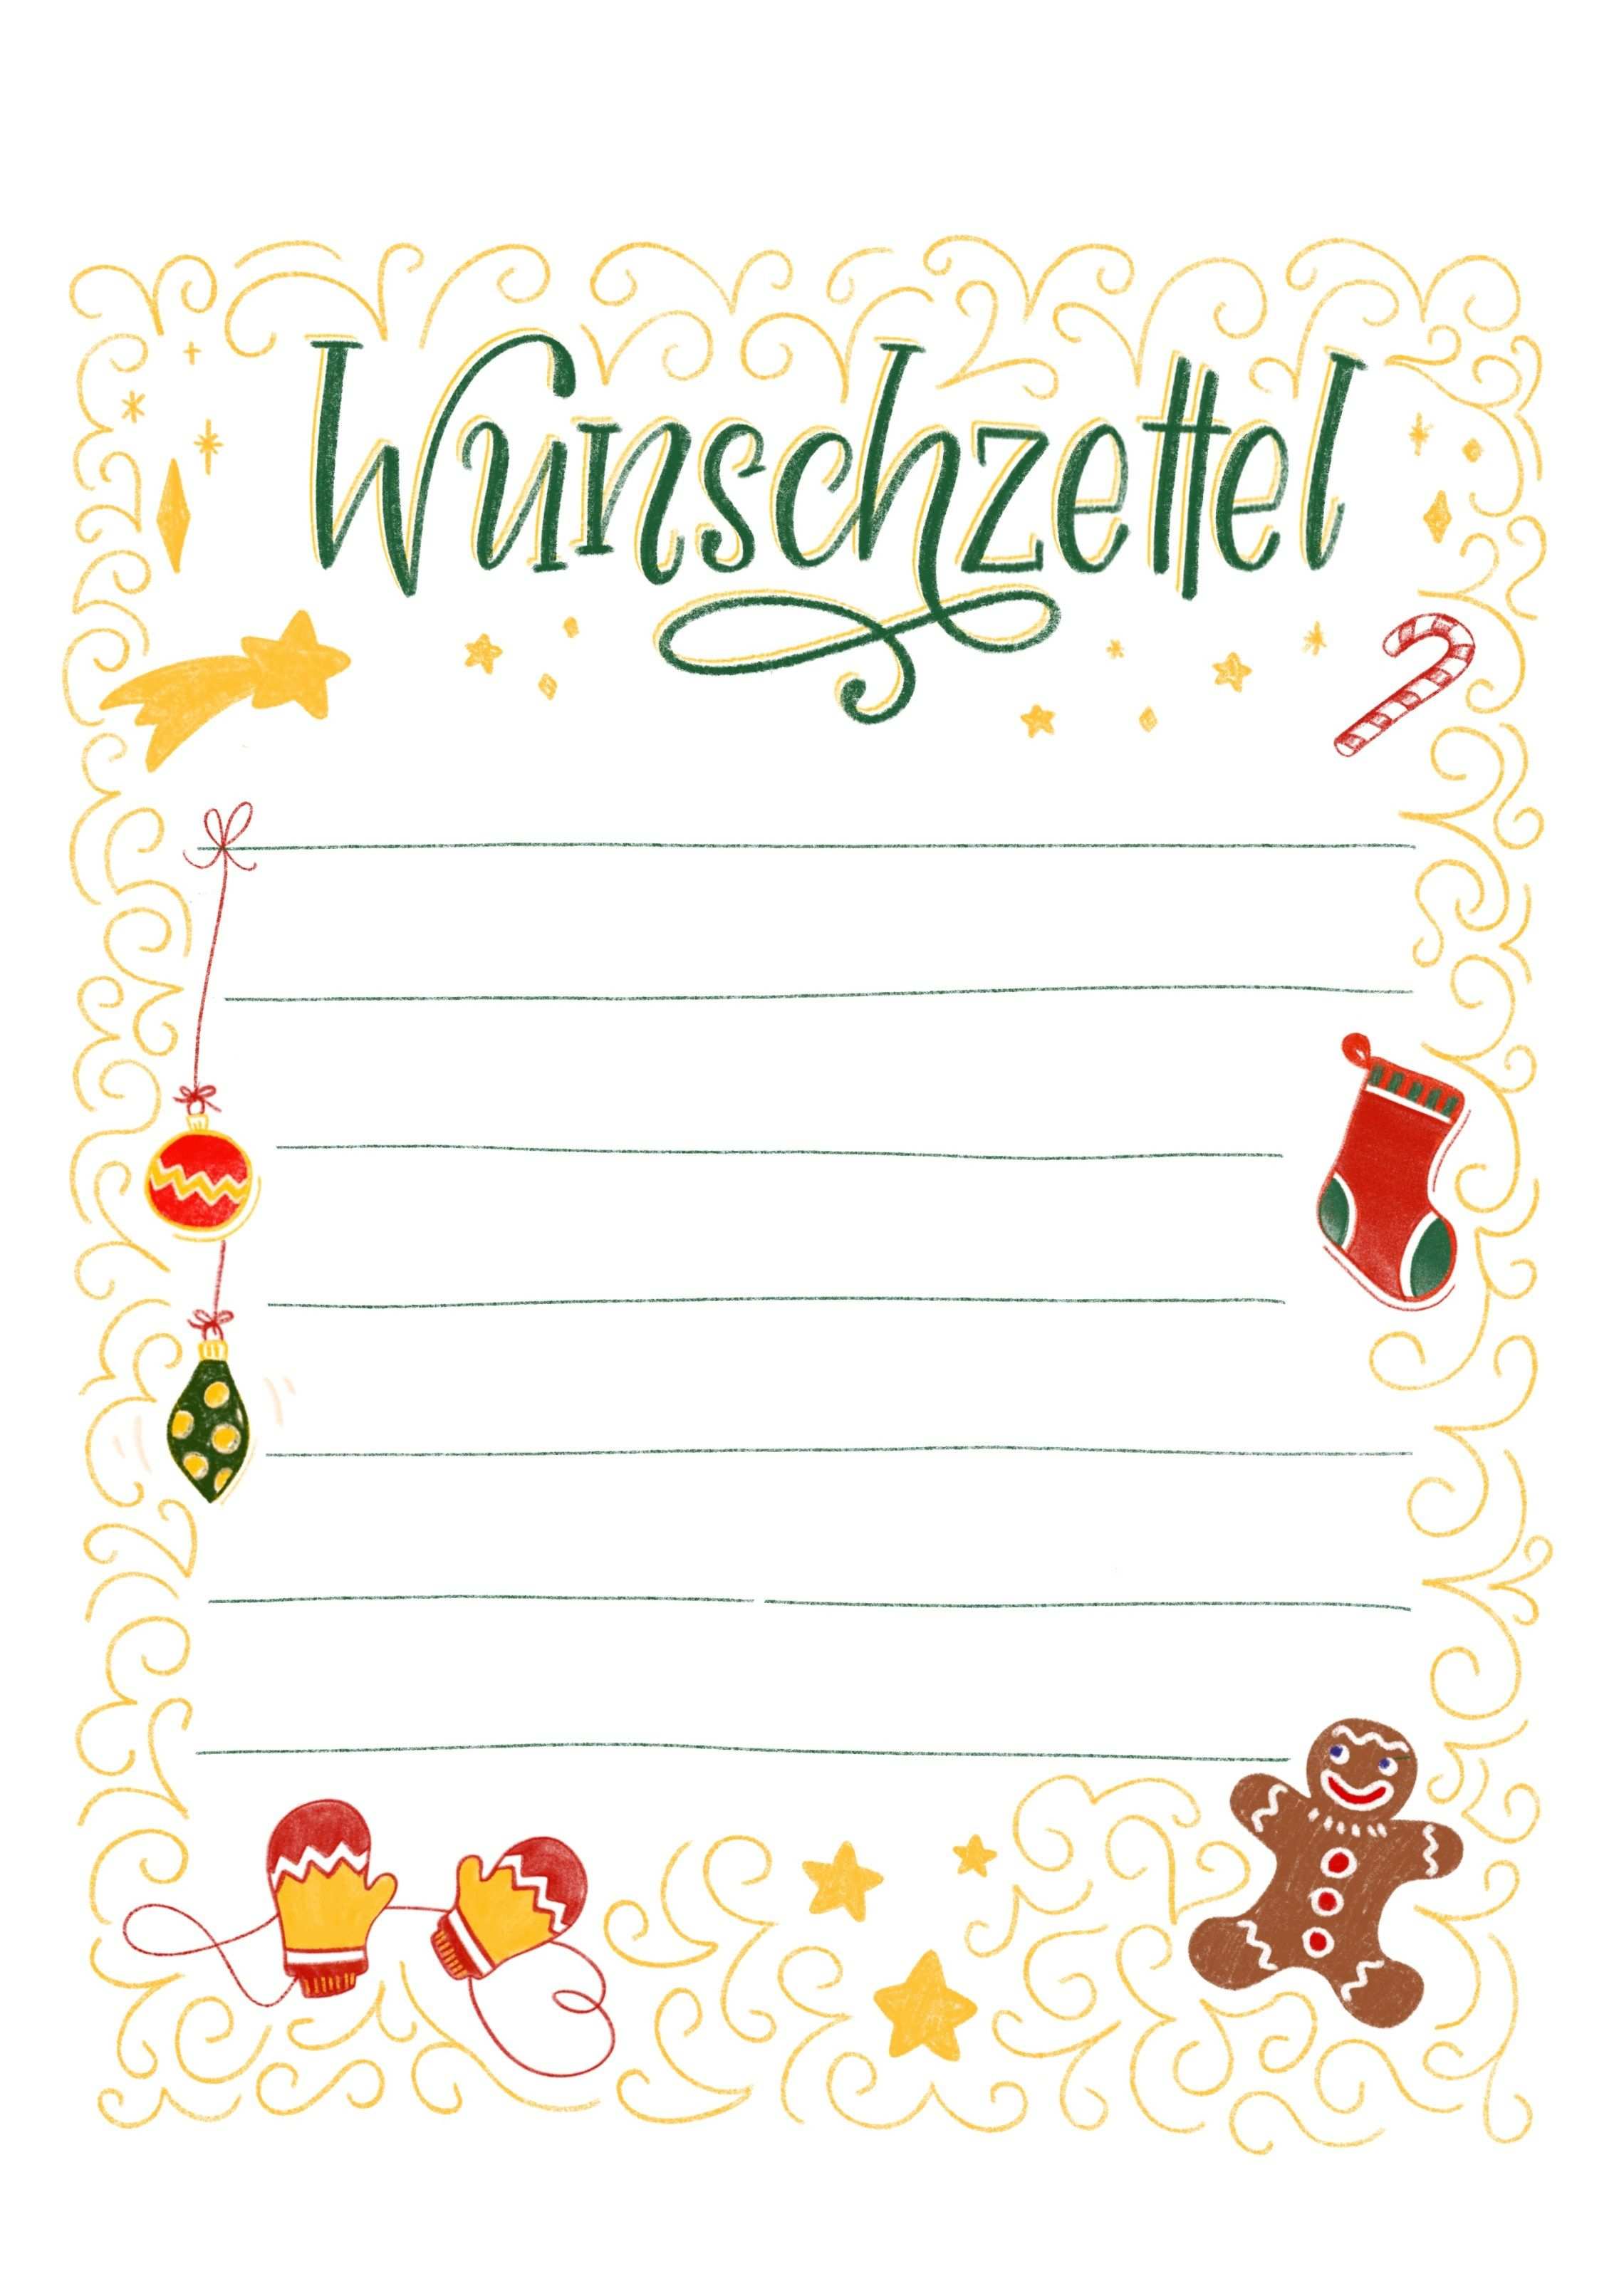 Wunschzettel Vorlage Zum Ausdrucken Bunte Galerie Wunschliste Weihnachten Brief Ans Christkind Weihnachtskarte Grusse